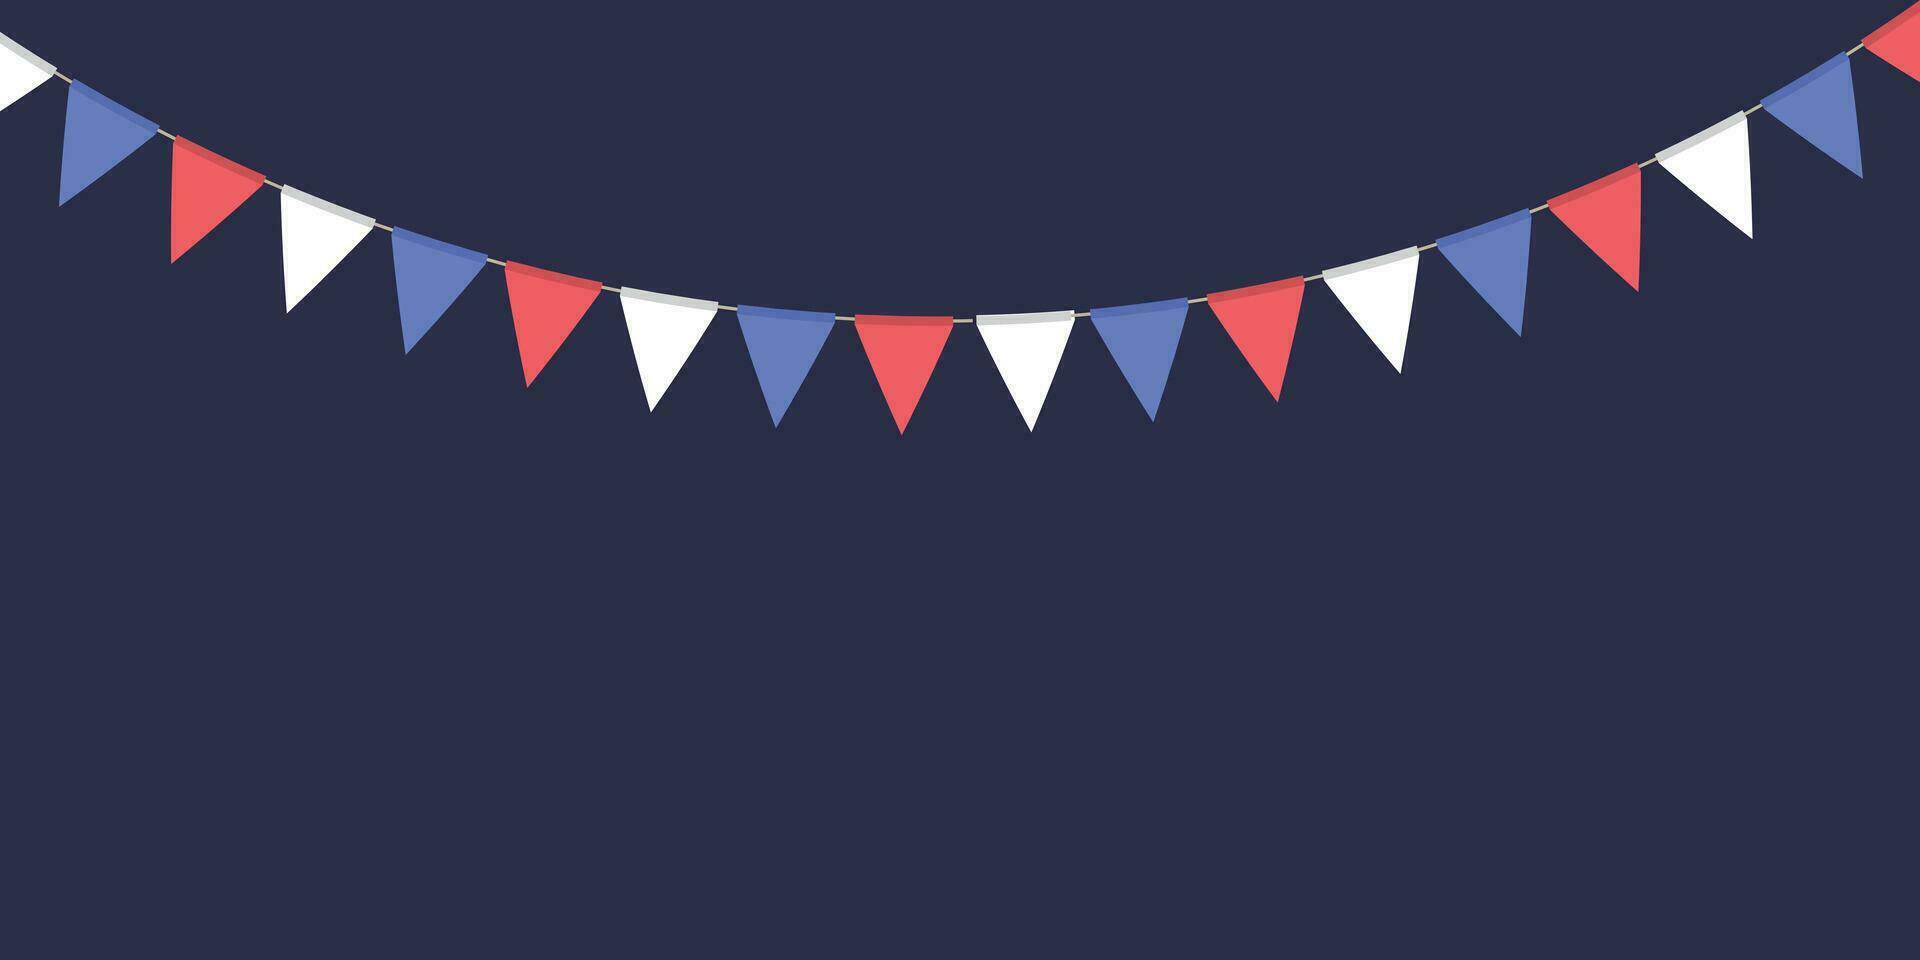 wit, blauw en rood vlag guirlande. driehoek wimpels ketting. partij decoratie. viering vlaggen voor decor vector